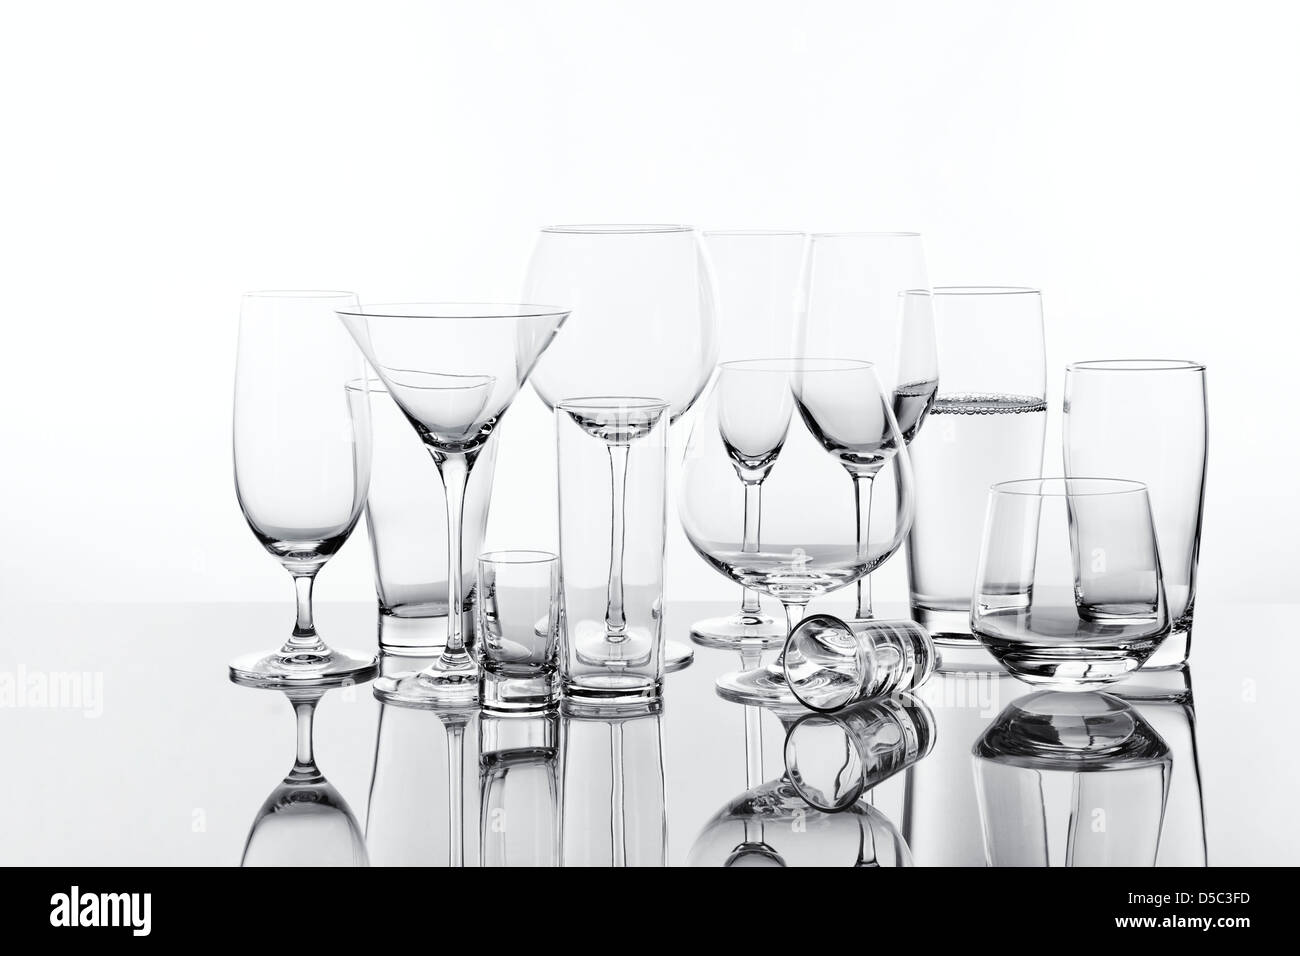 Vielzahl von 13 trinken Gläser, eins ist gefüllt, Hintergrundbeleuchtung Stockfoto